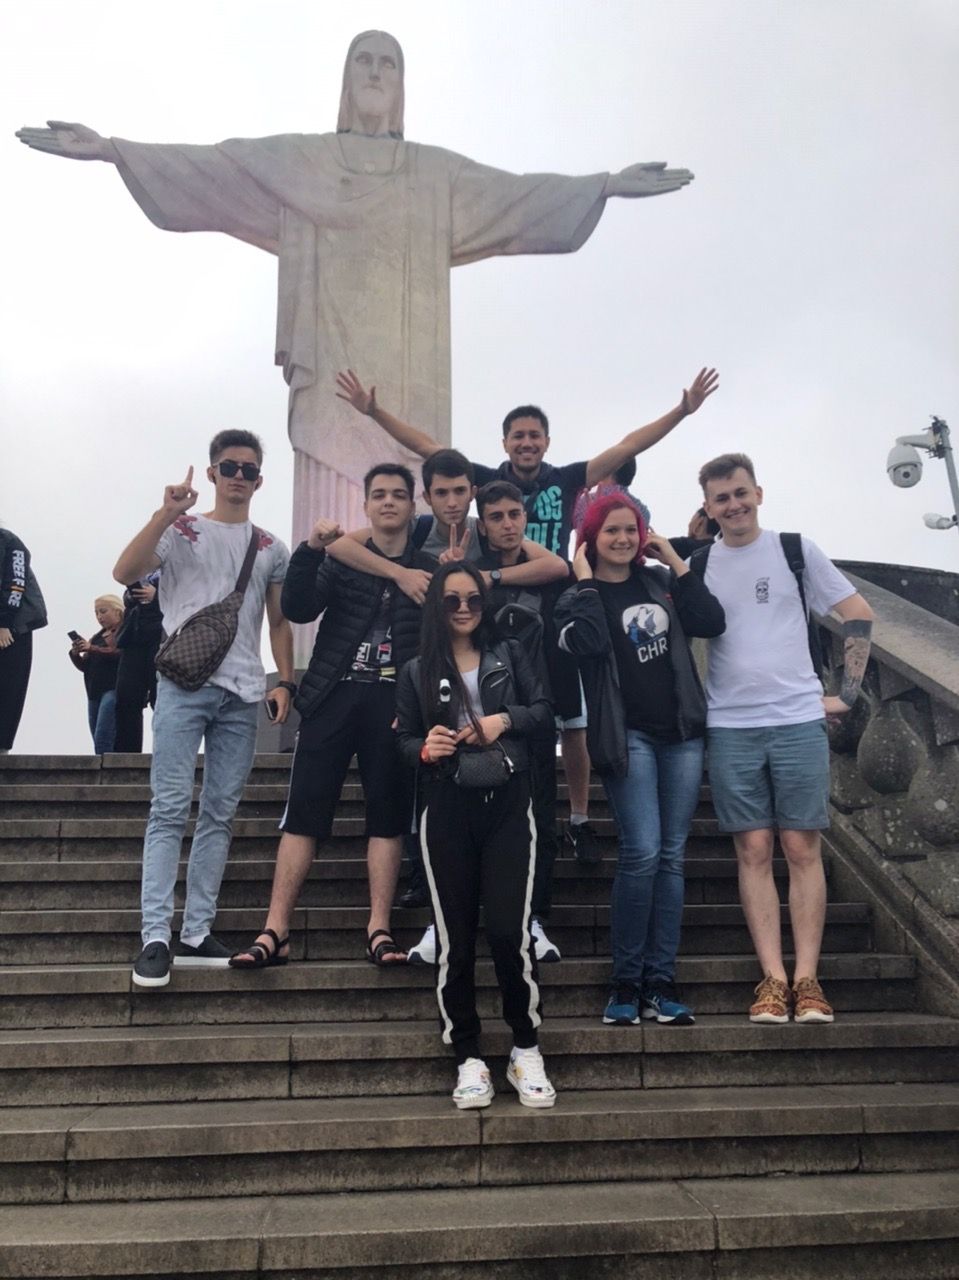 Команда у статуи Христа-Искупителя. Рио-де-Жанейро, Бразилия. Источник: vk.com/pokoriteltop